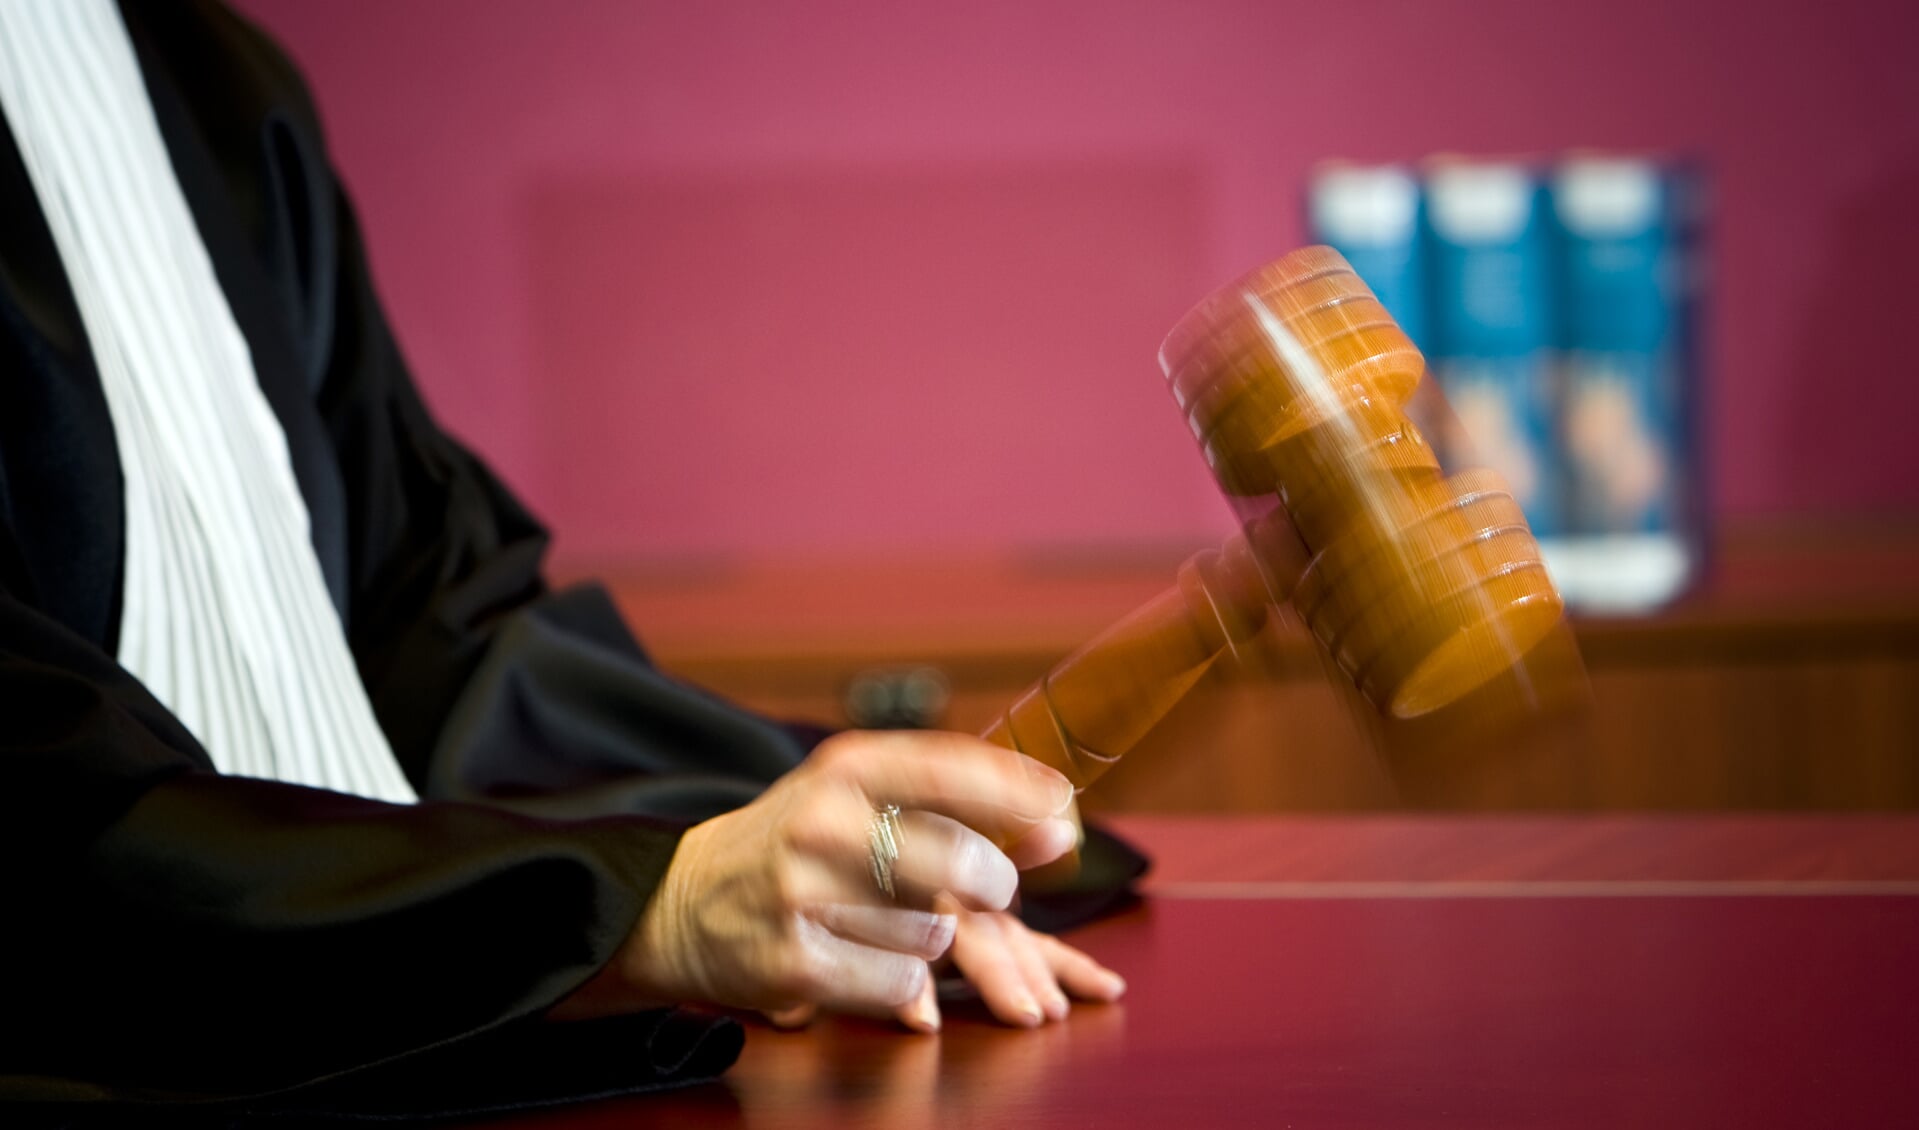 De rechtbank heeft een TBS-maatregel voor een man die in 2012 een 7-jarig meisje misbruikte in Cuijk opgeheven.